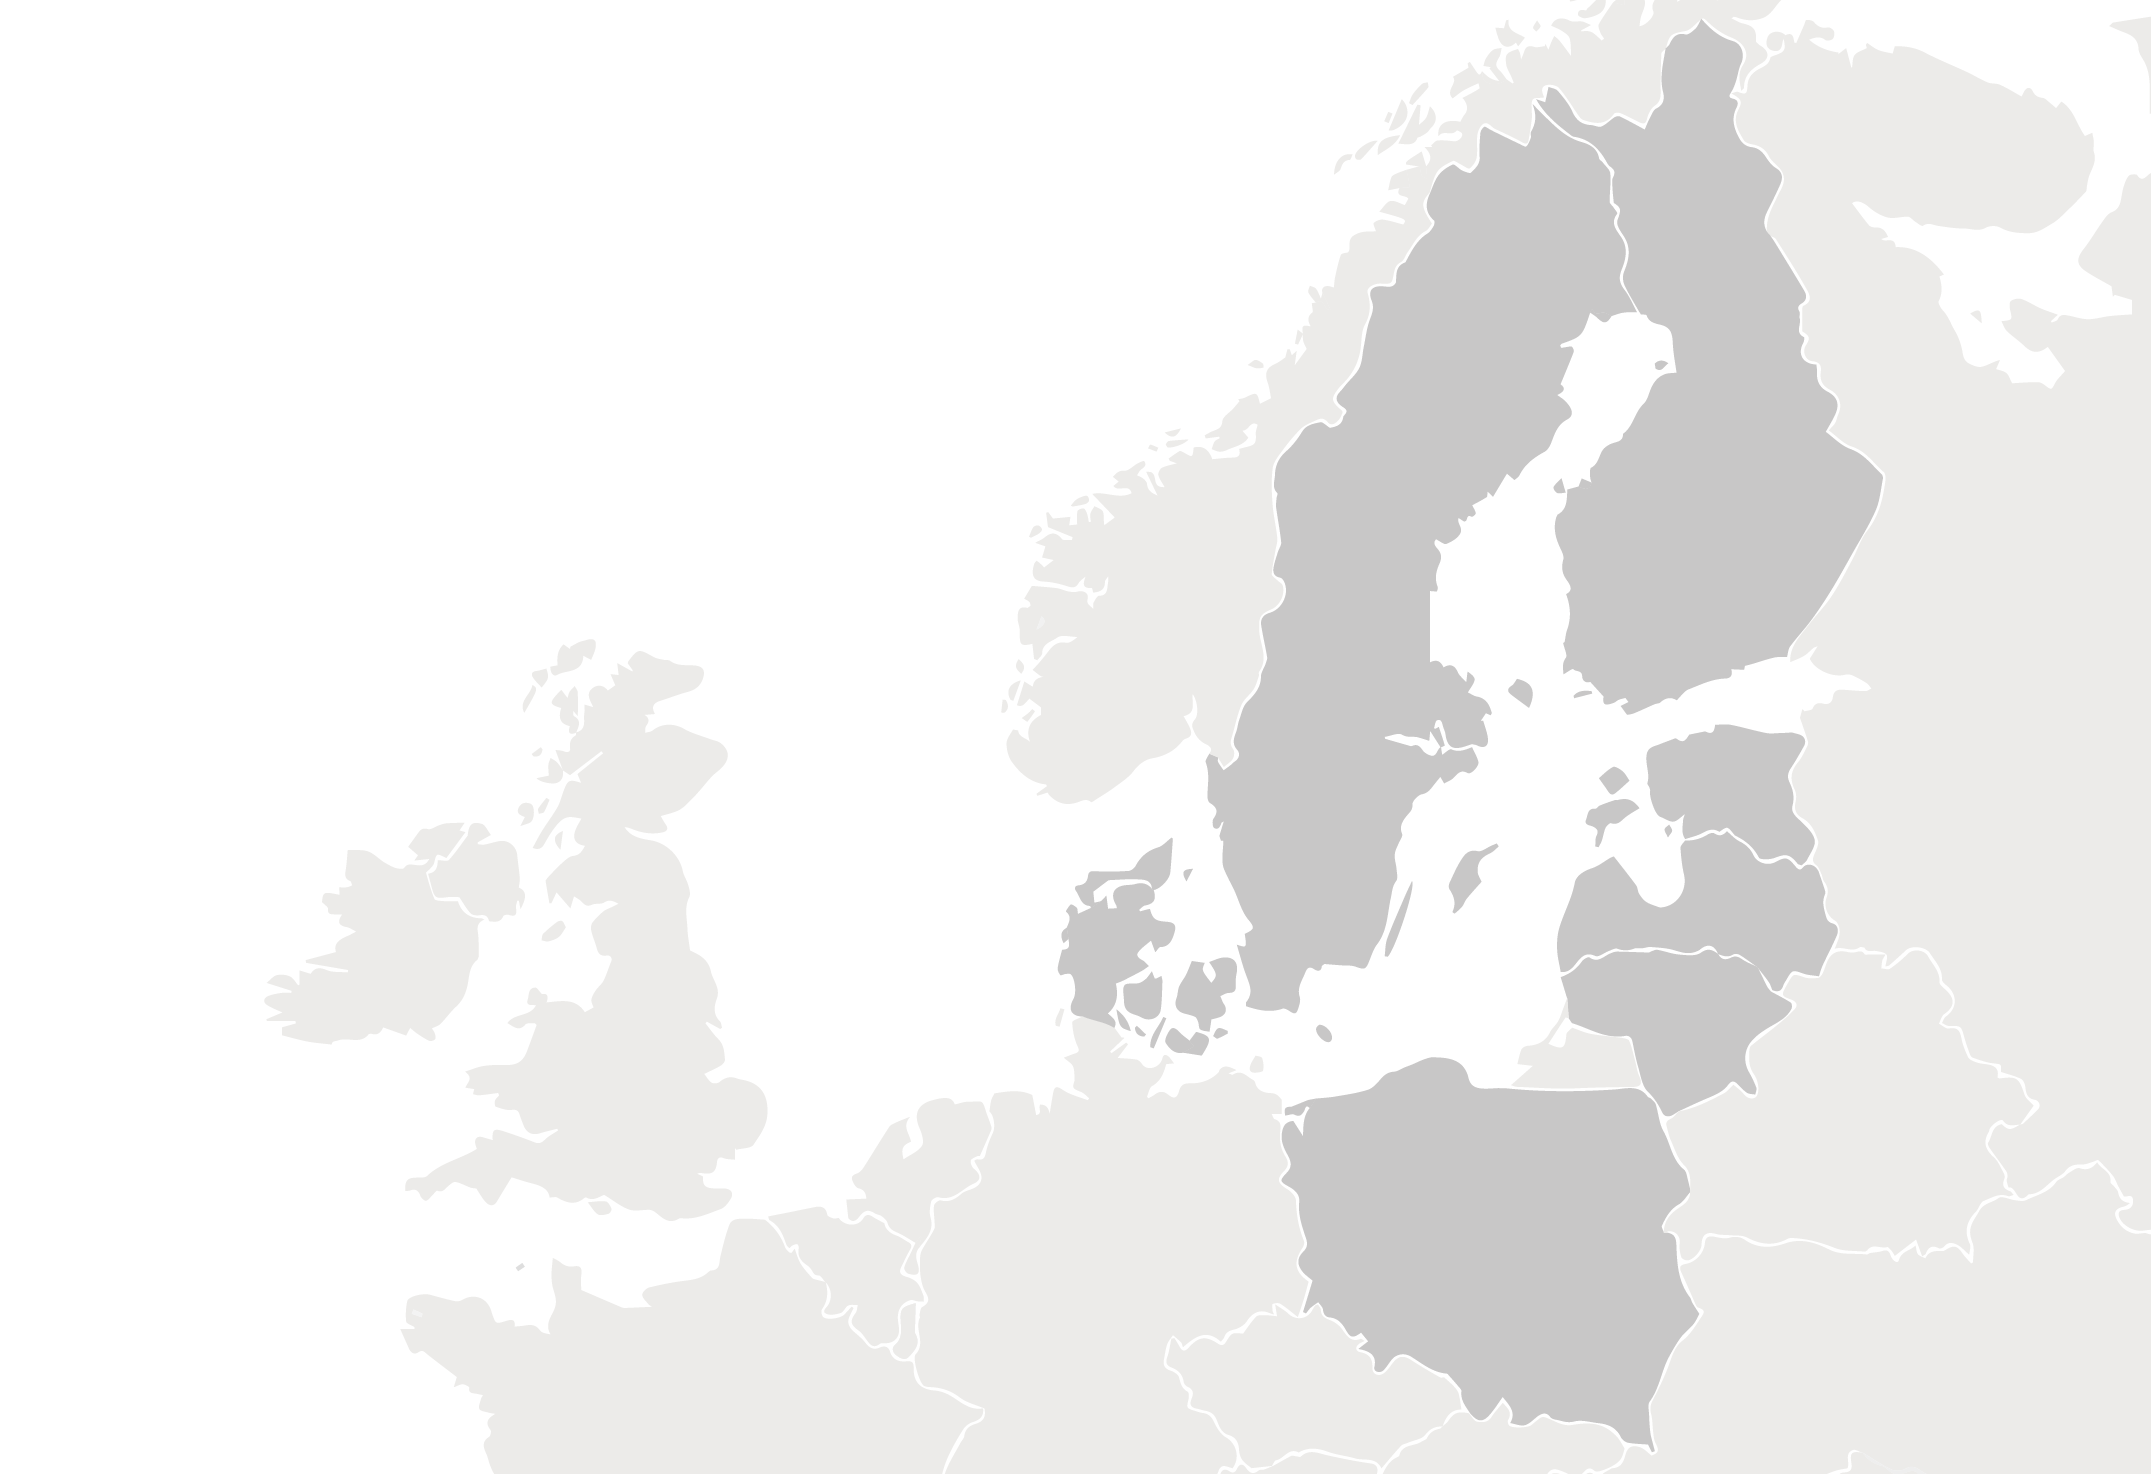 Erinomainen maantieteellinen sijainti tuo toiminnallista tehokkuutta Kaikki HKScanin toiminnot sijaitsevat Itämeren ympärillä.